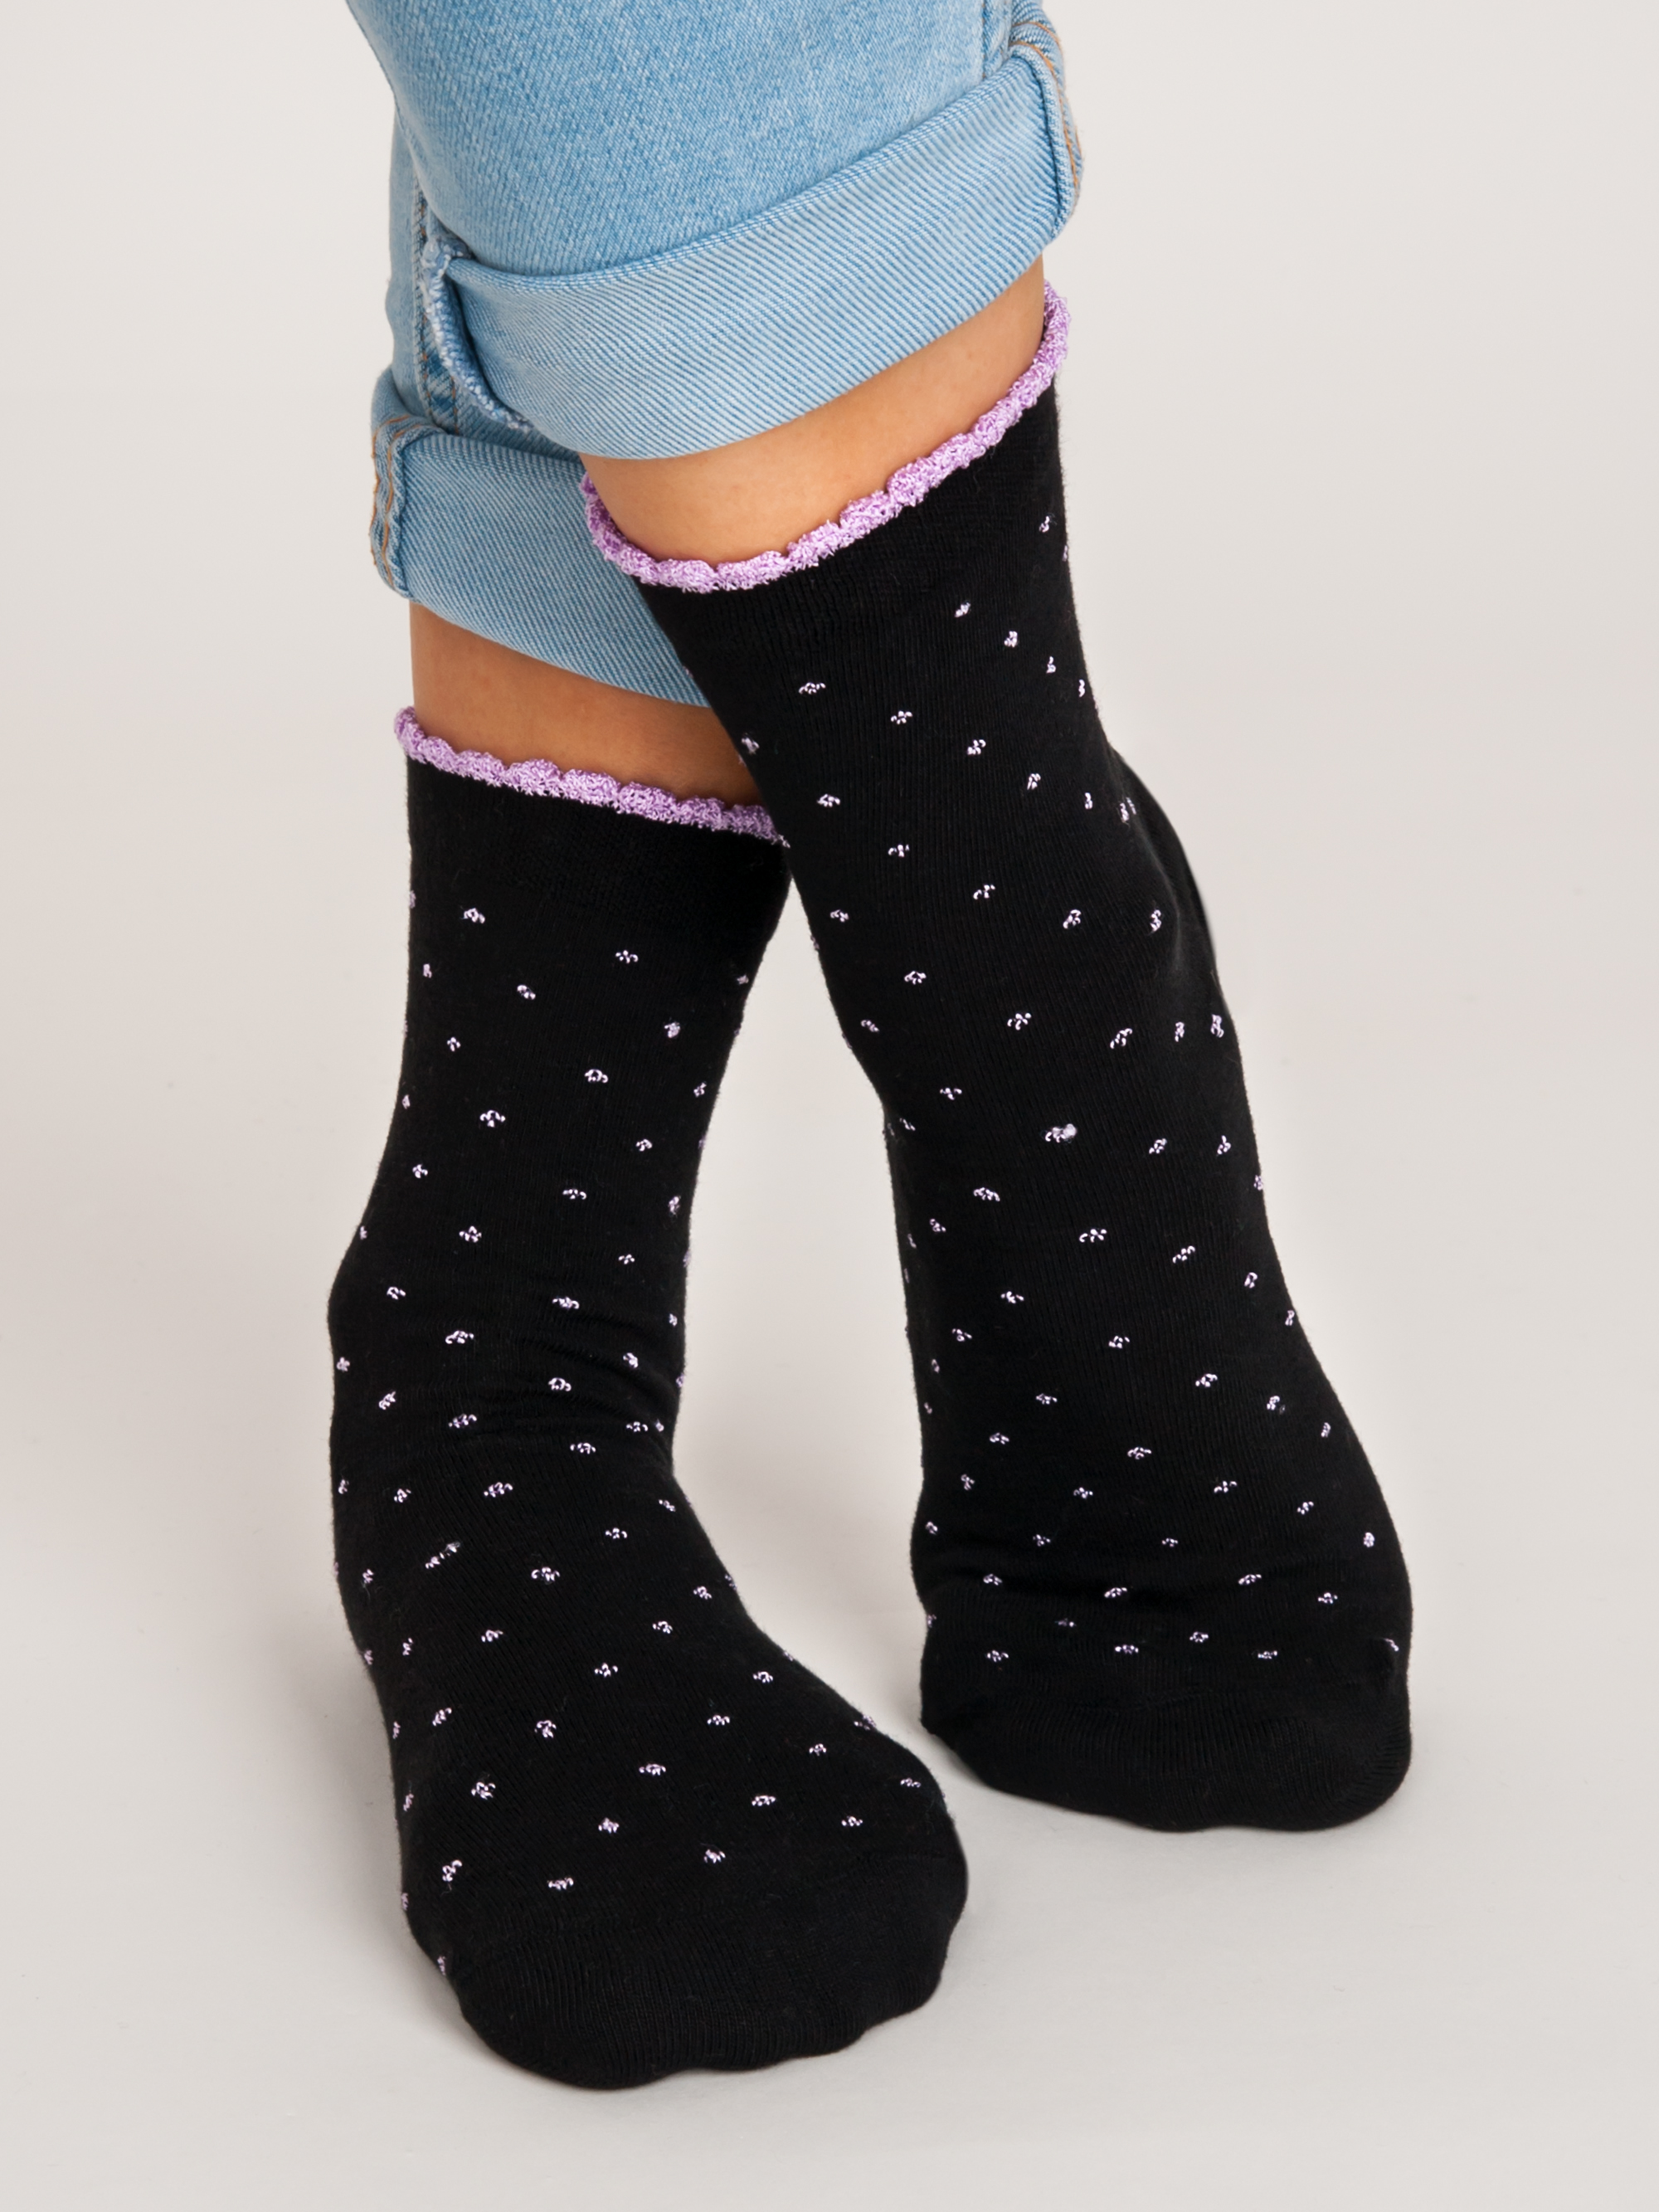 NOVITI Woman's Socks SB013-W-04